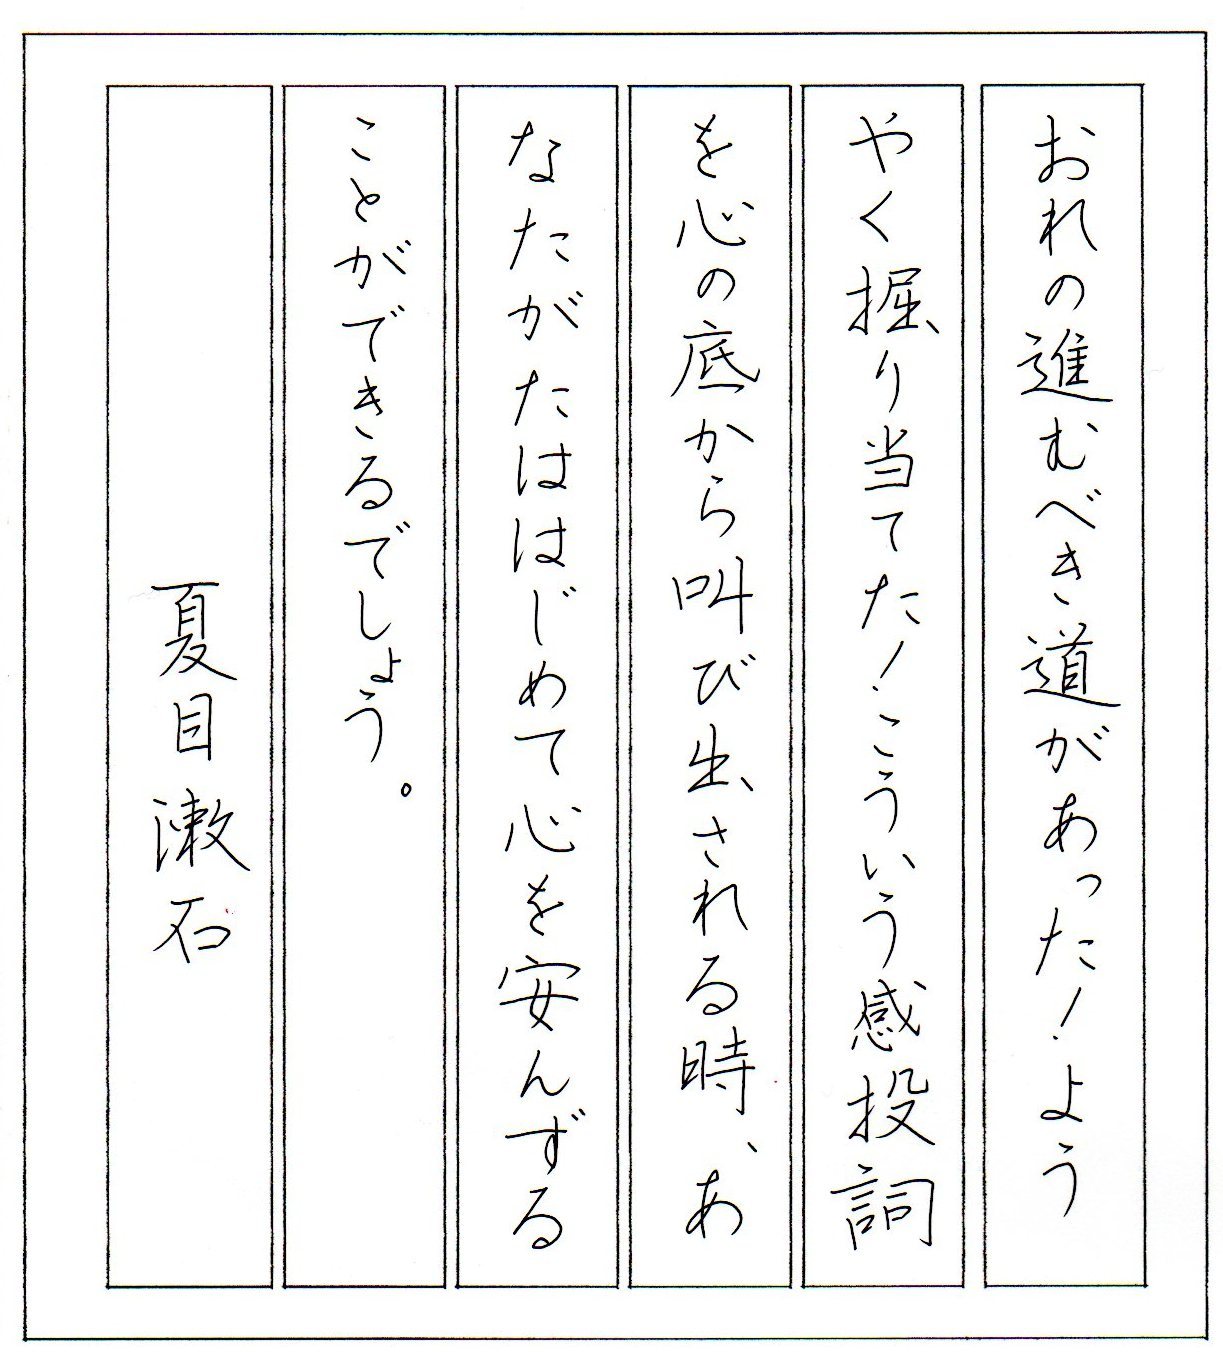 ペン字無料手本 夏目漱石の名言 7 書道習字ペン字お手本